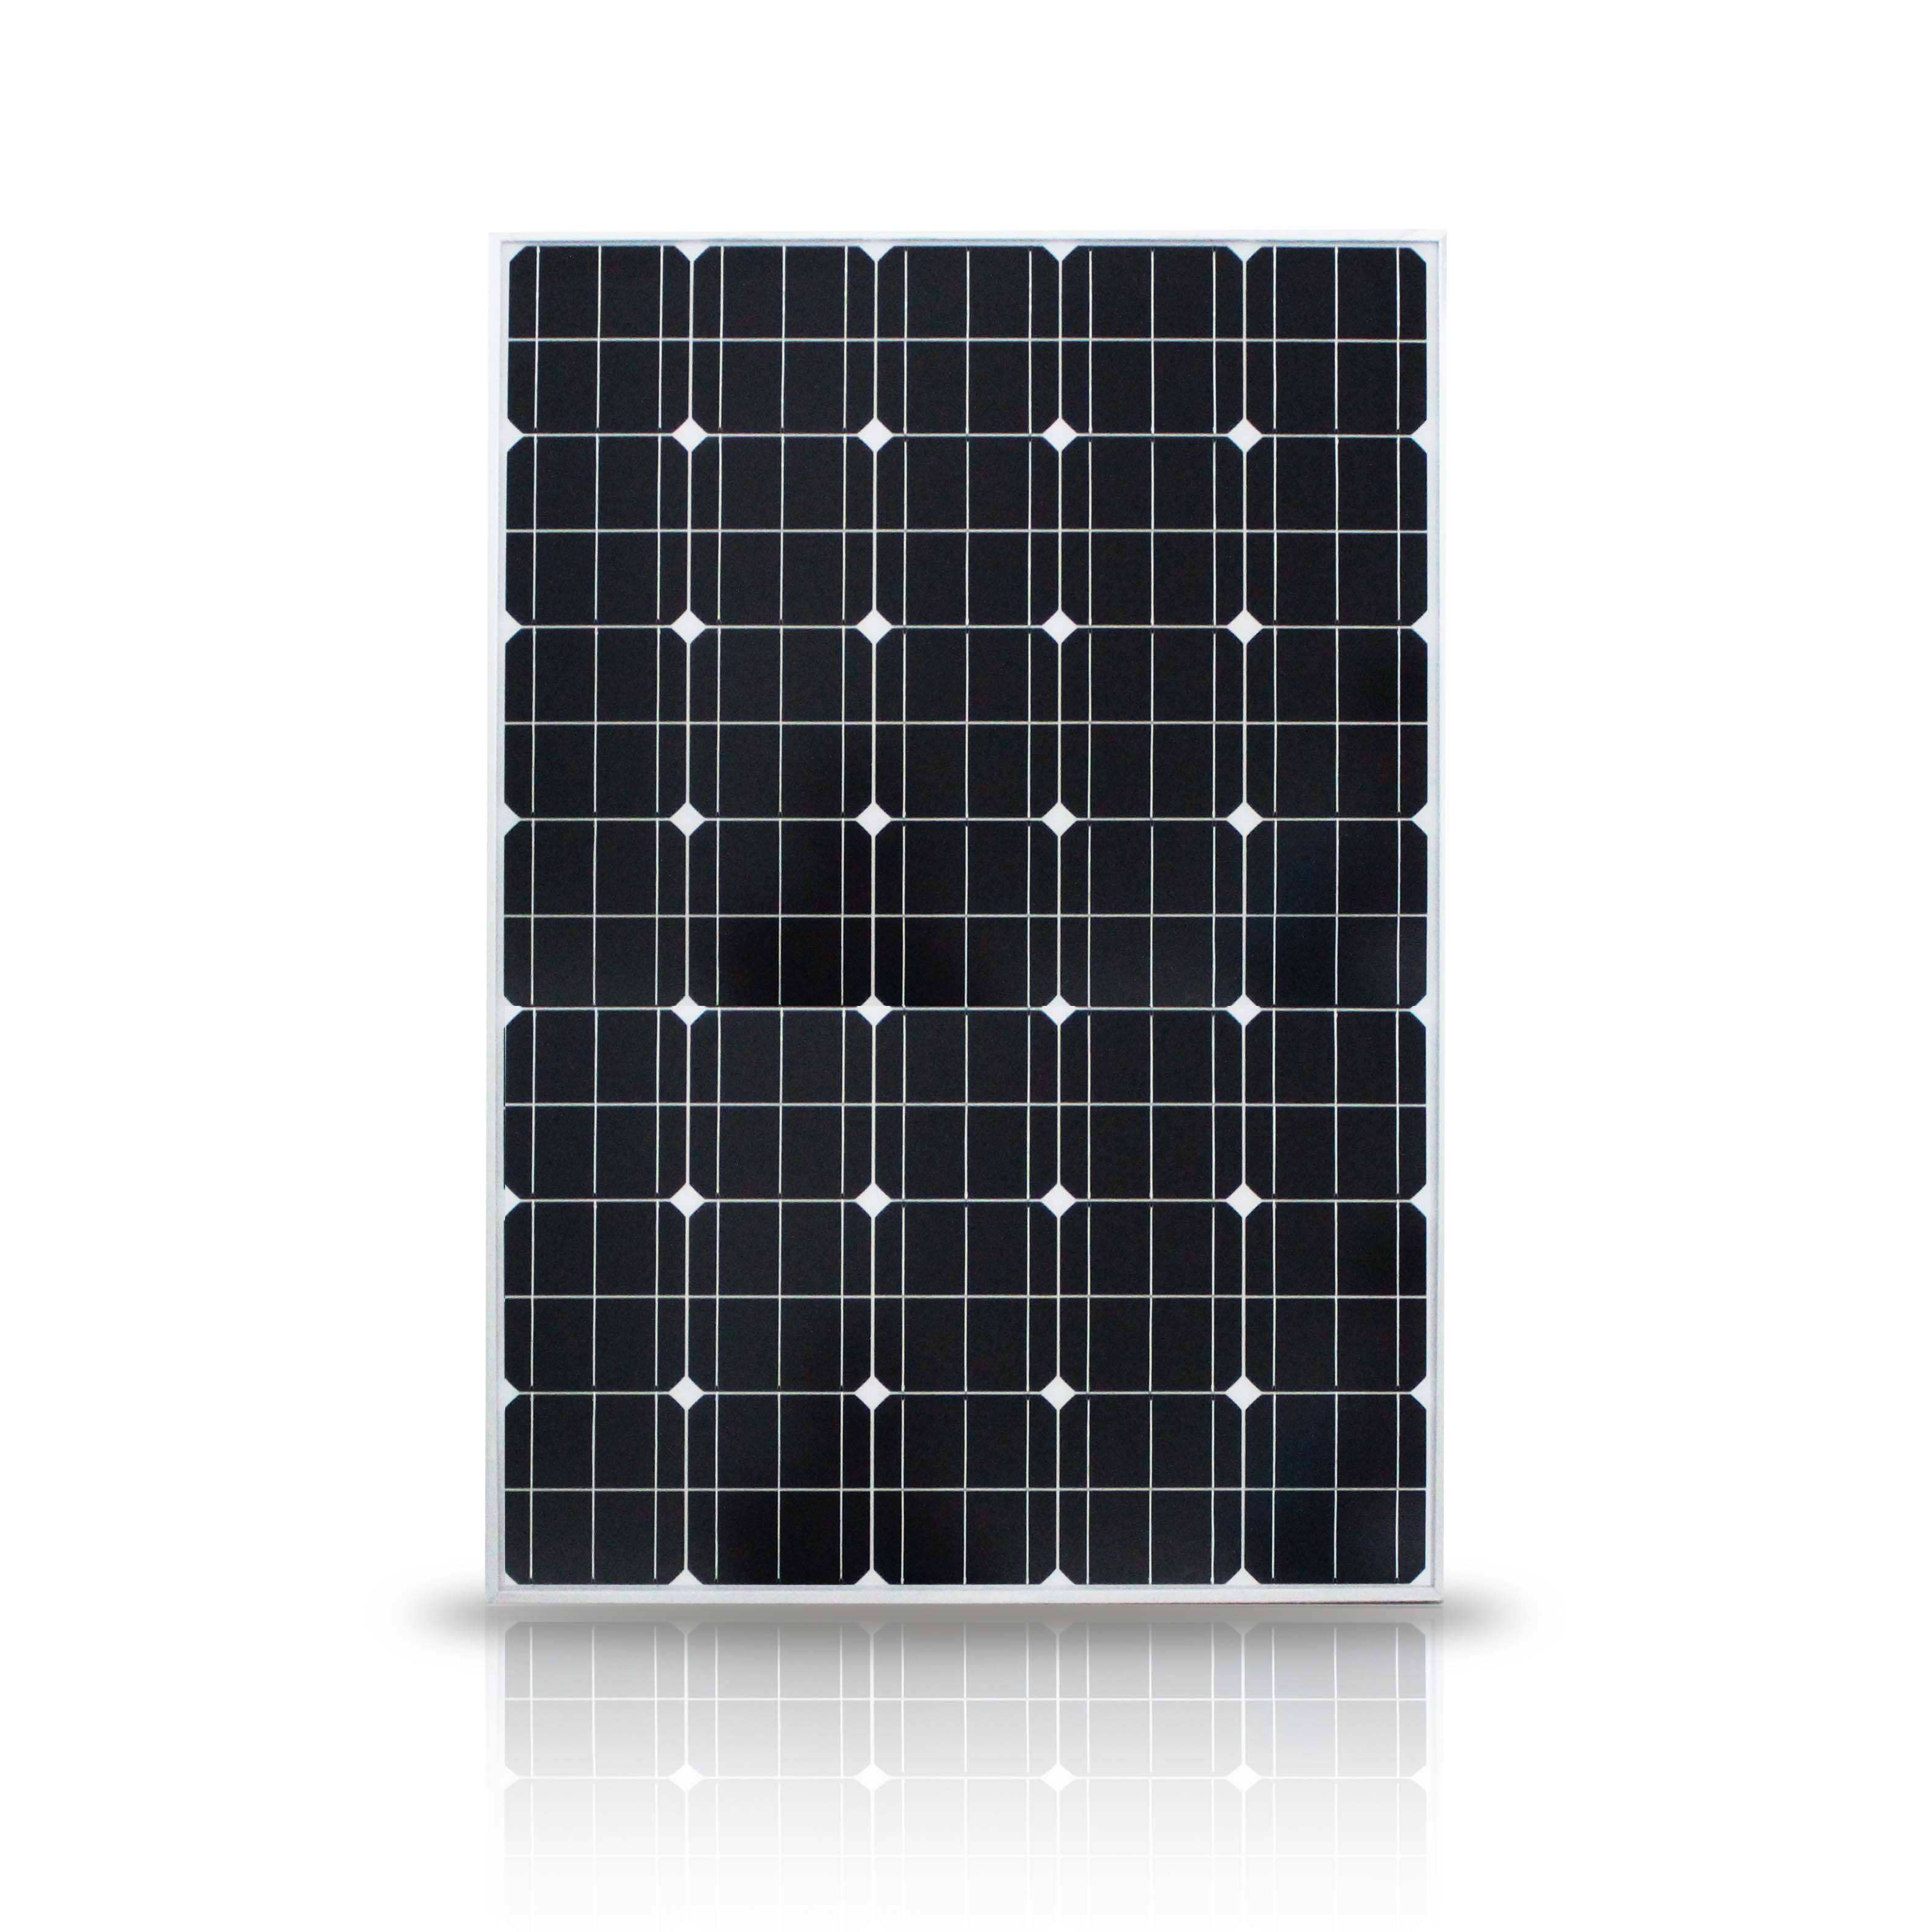 50W广告灯箱太阳能电池板